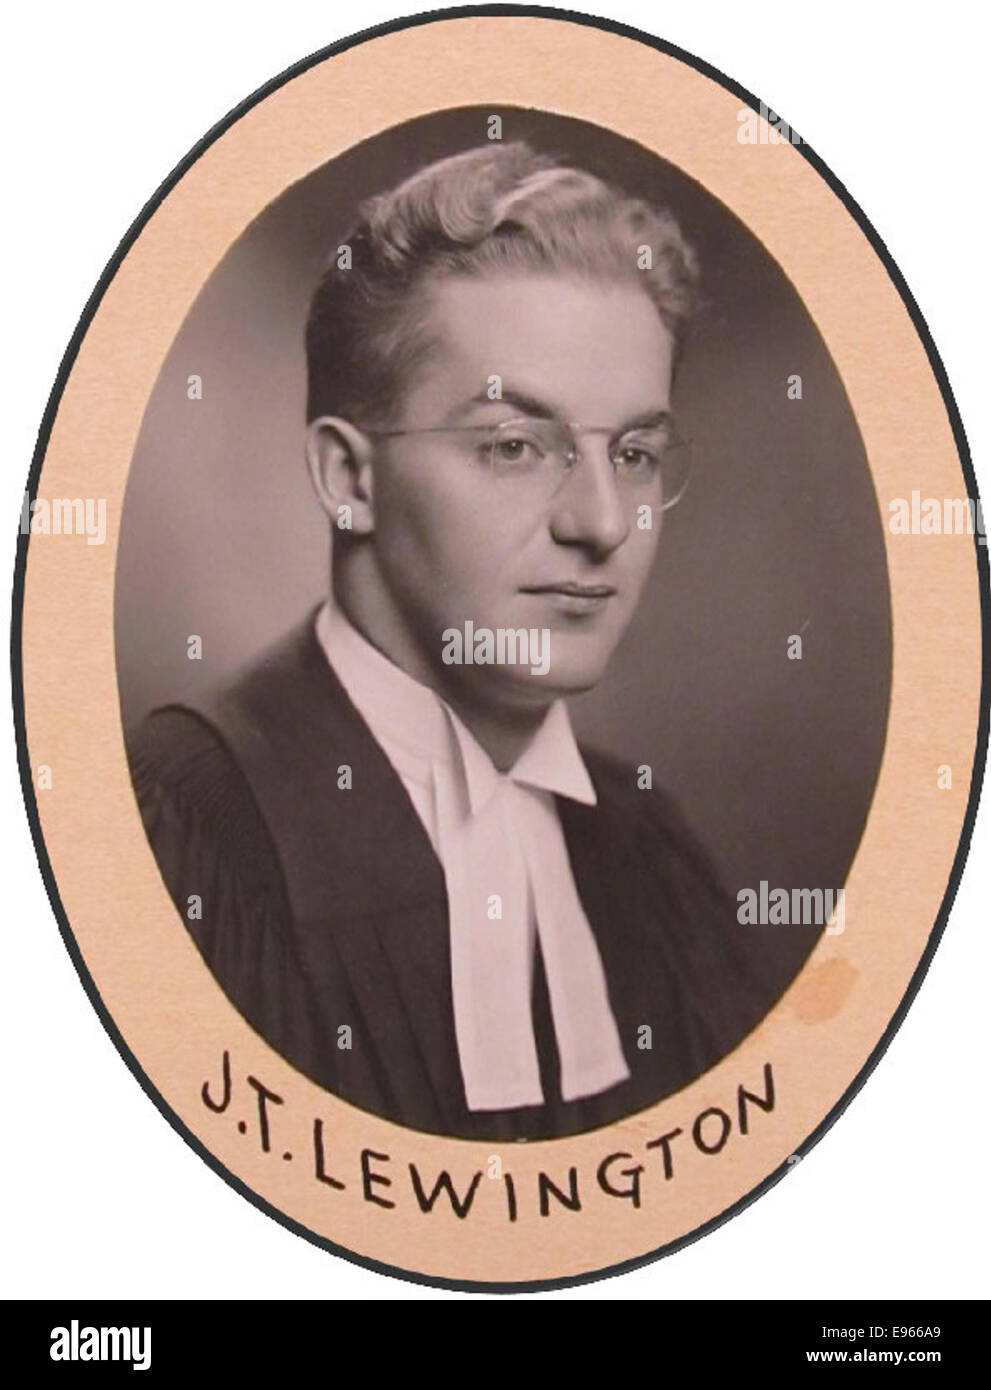 Photograph of JT Lewington 14554843  o Stock Photo